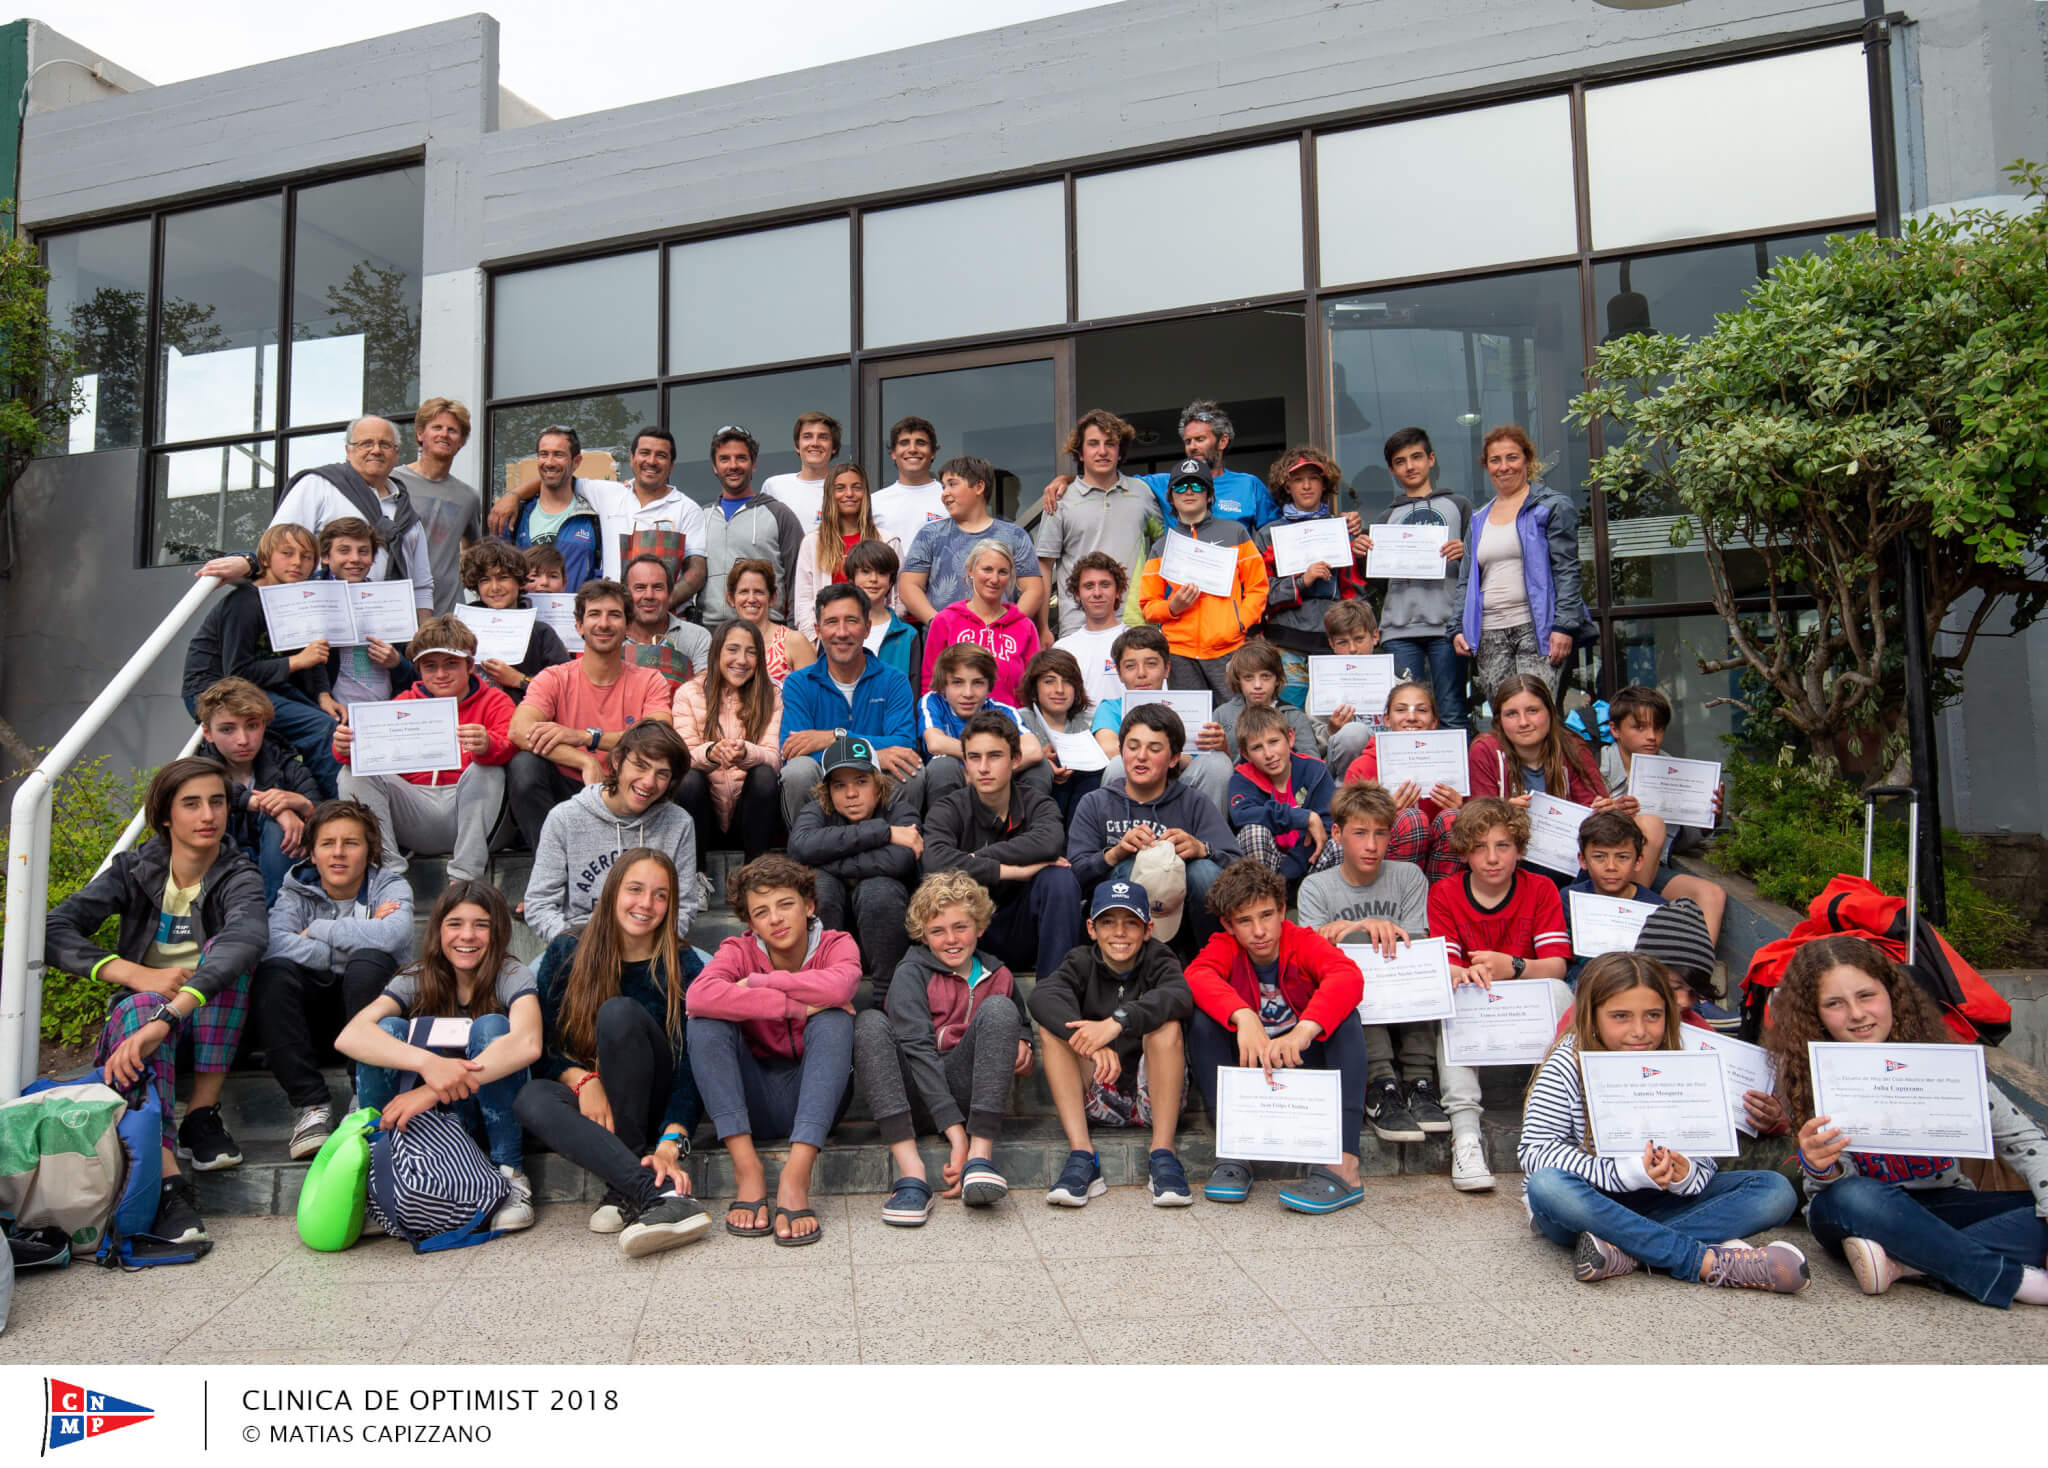 Los chicos con los diplomas en la Clinica de Optimist en Mar del Plata